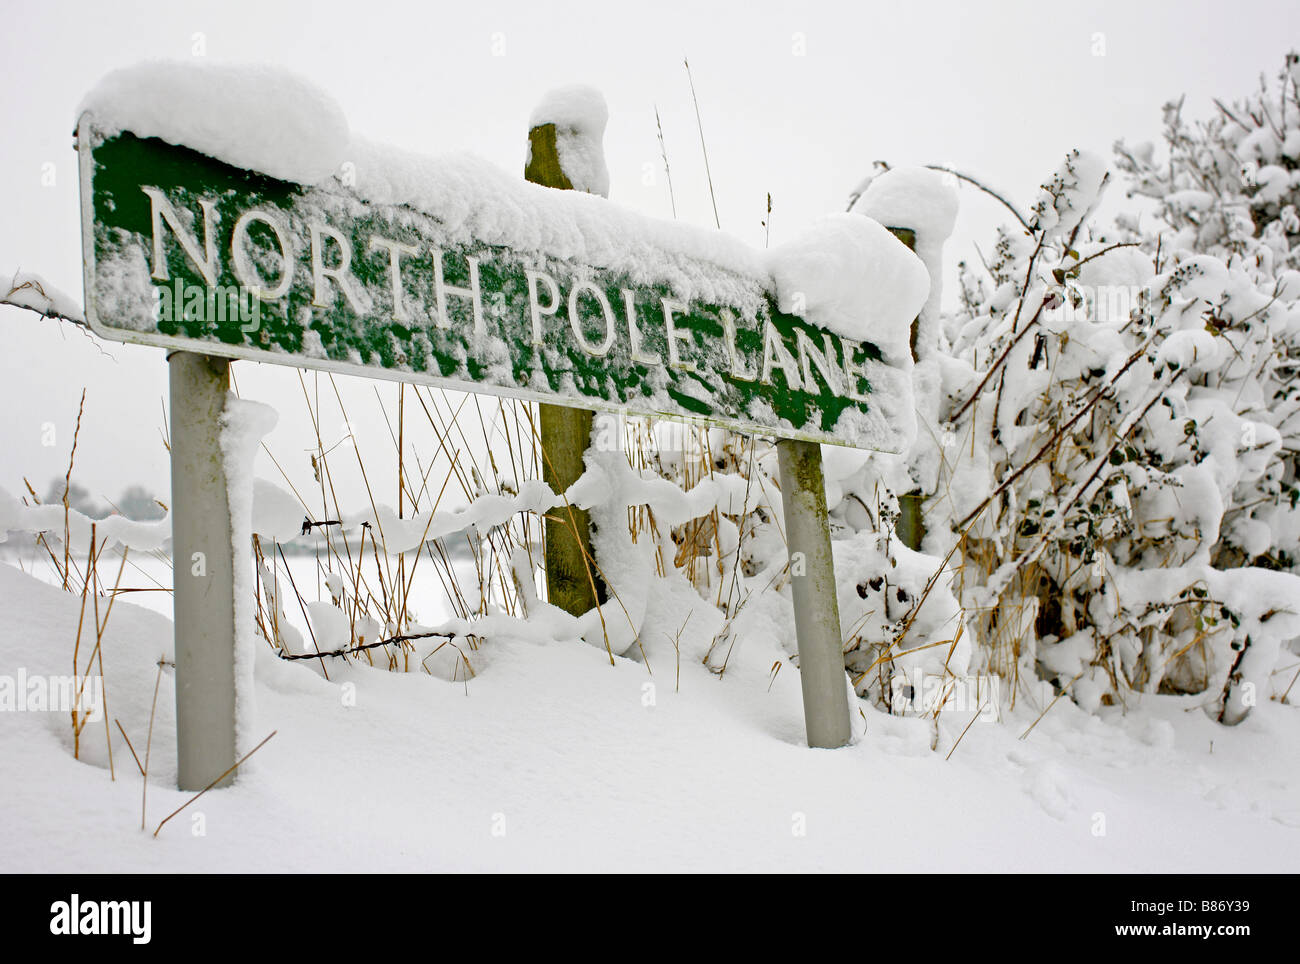 Une route couverte de neige panneau 'Pôle Nord' dans Lane, Grand Londres Keston, après la chute de neige la plus lourde en 18 ans. Banque D'Images